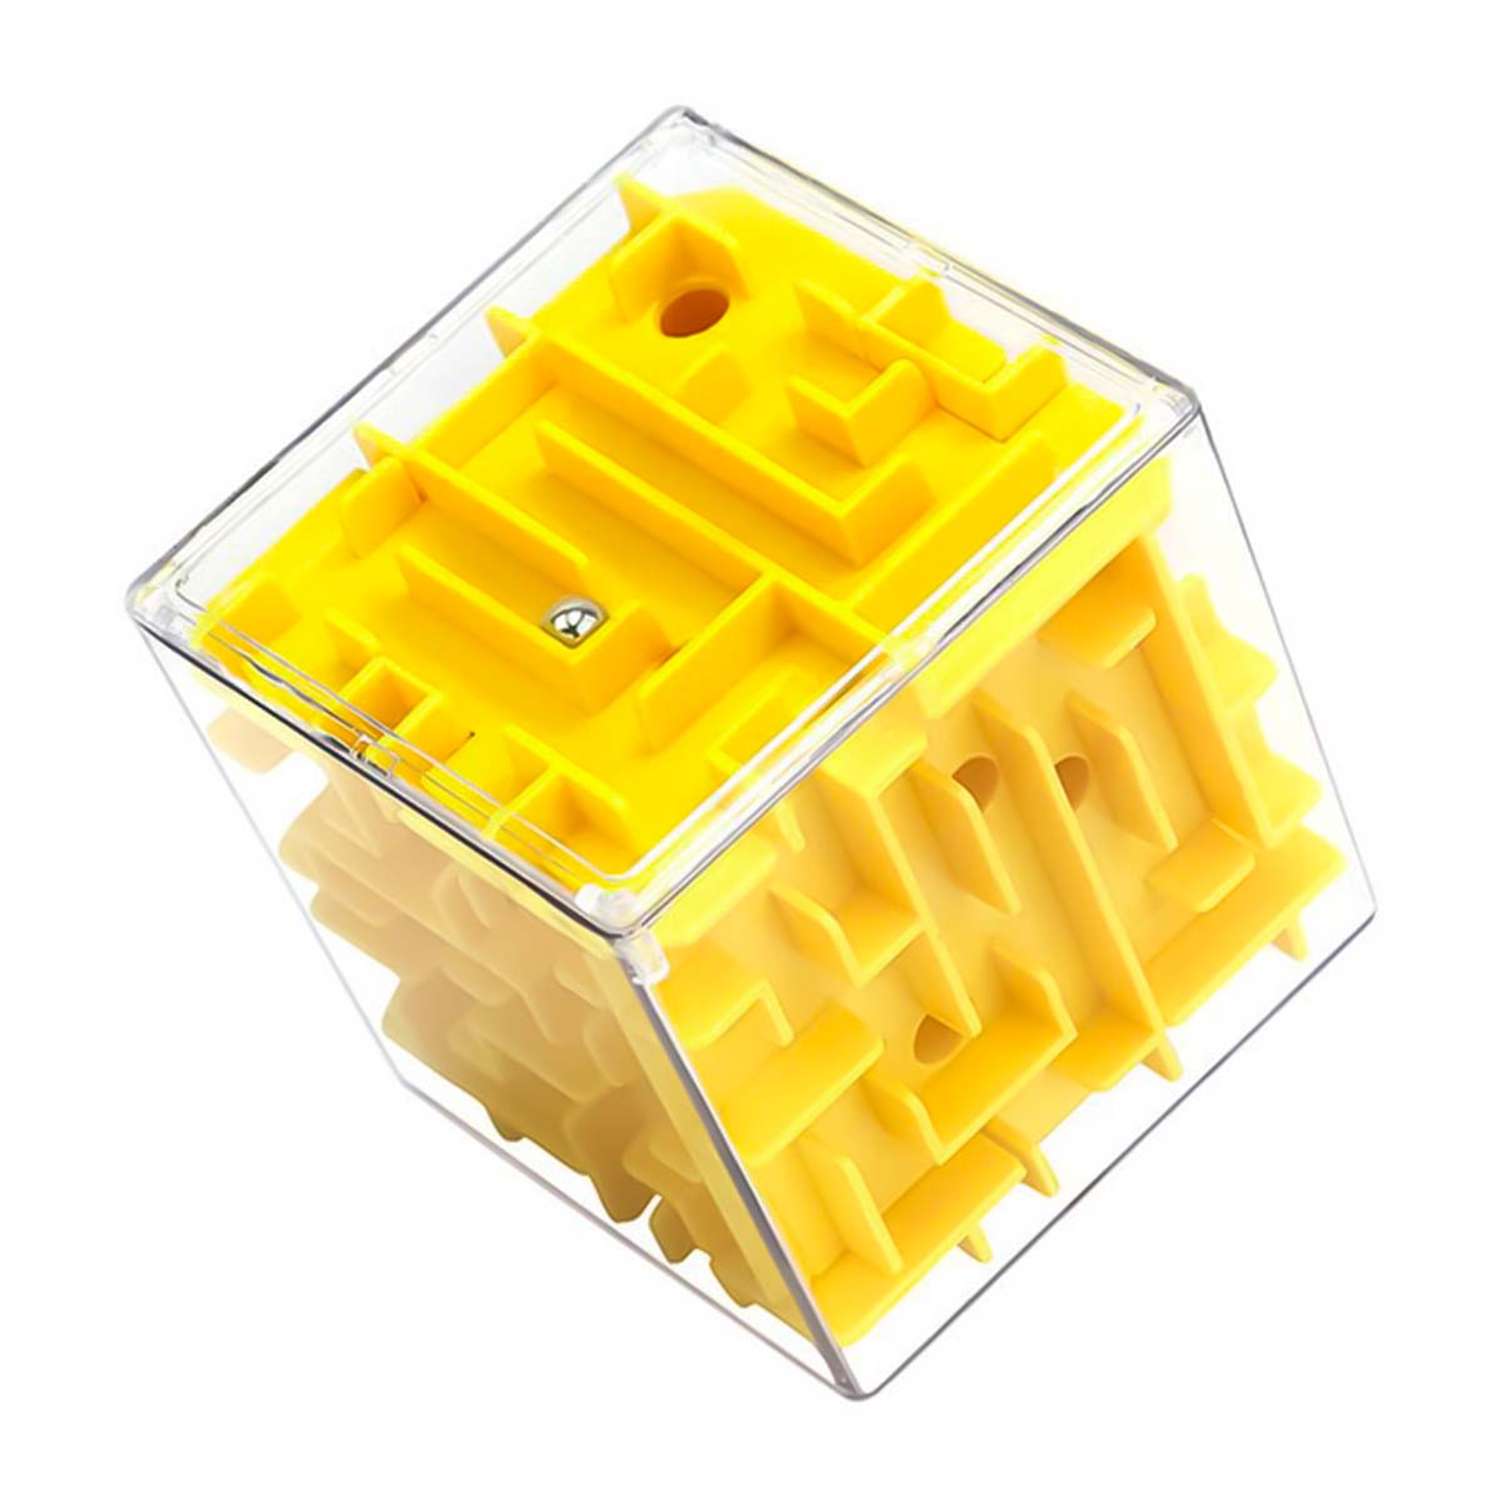 Головоломка для детей WiMI логический куб с шариком желтый - фото 1